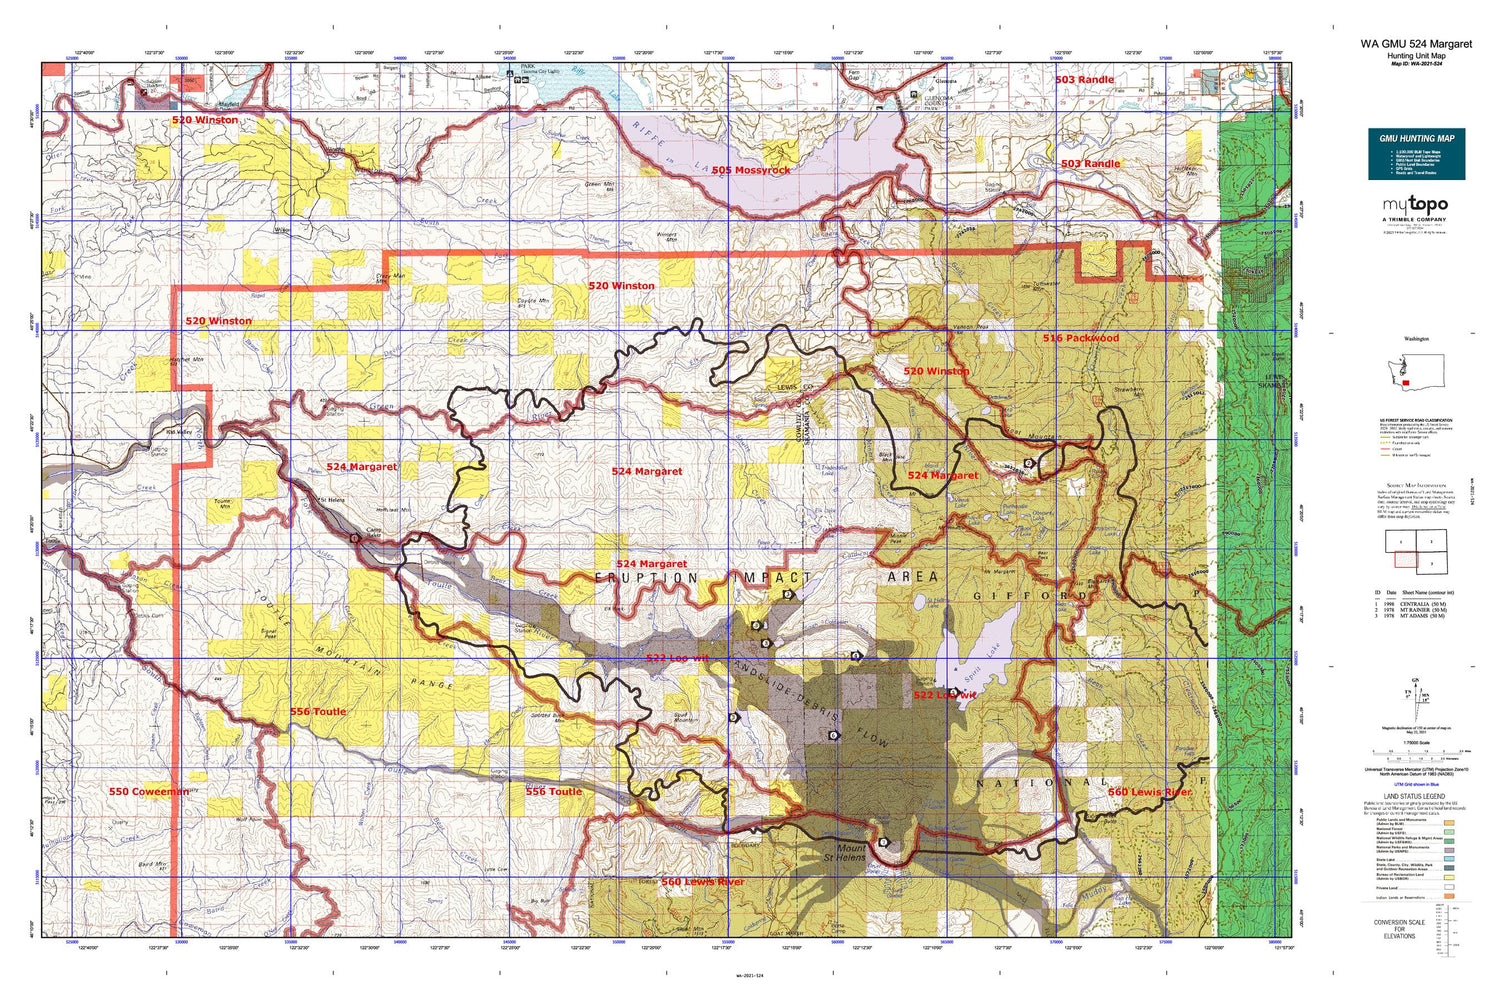 Washington GMU 524 Margaret Map – MyTopo Map Store